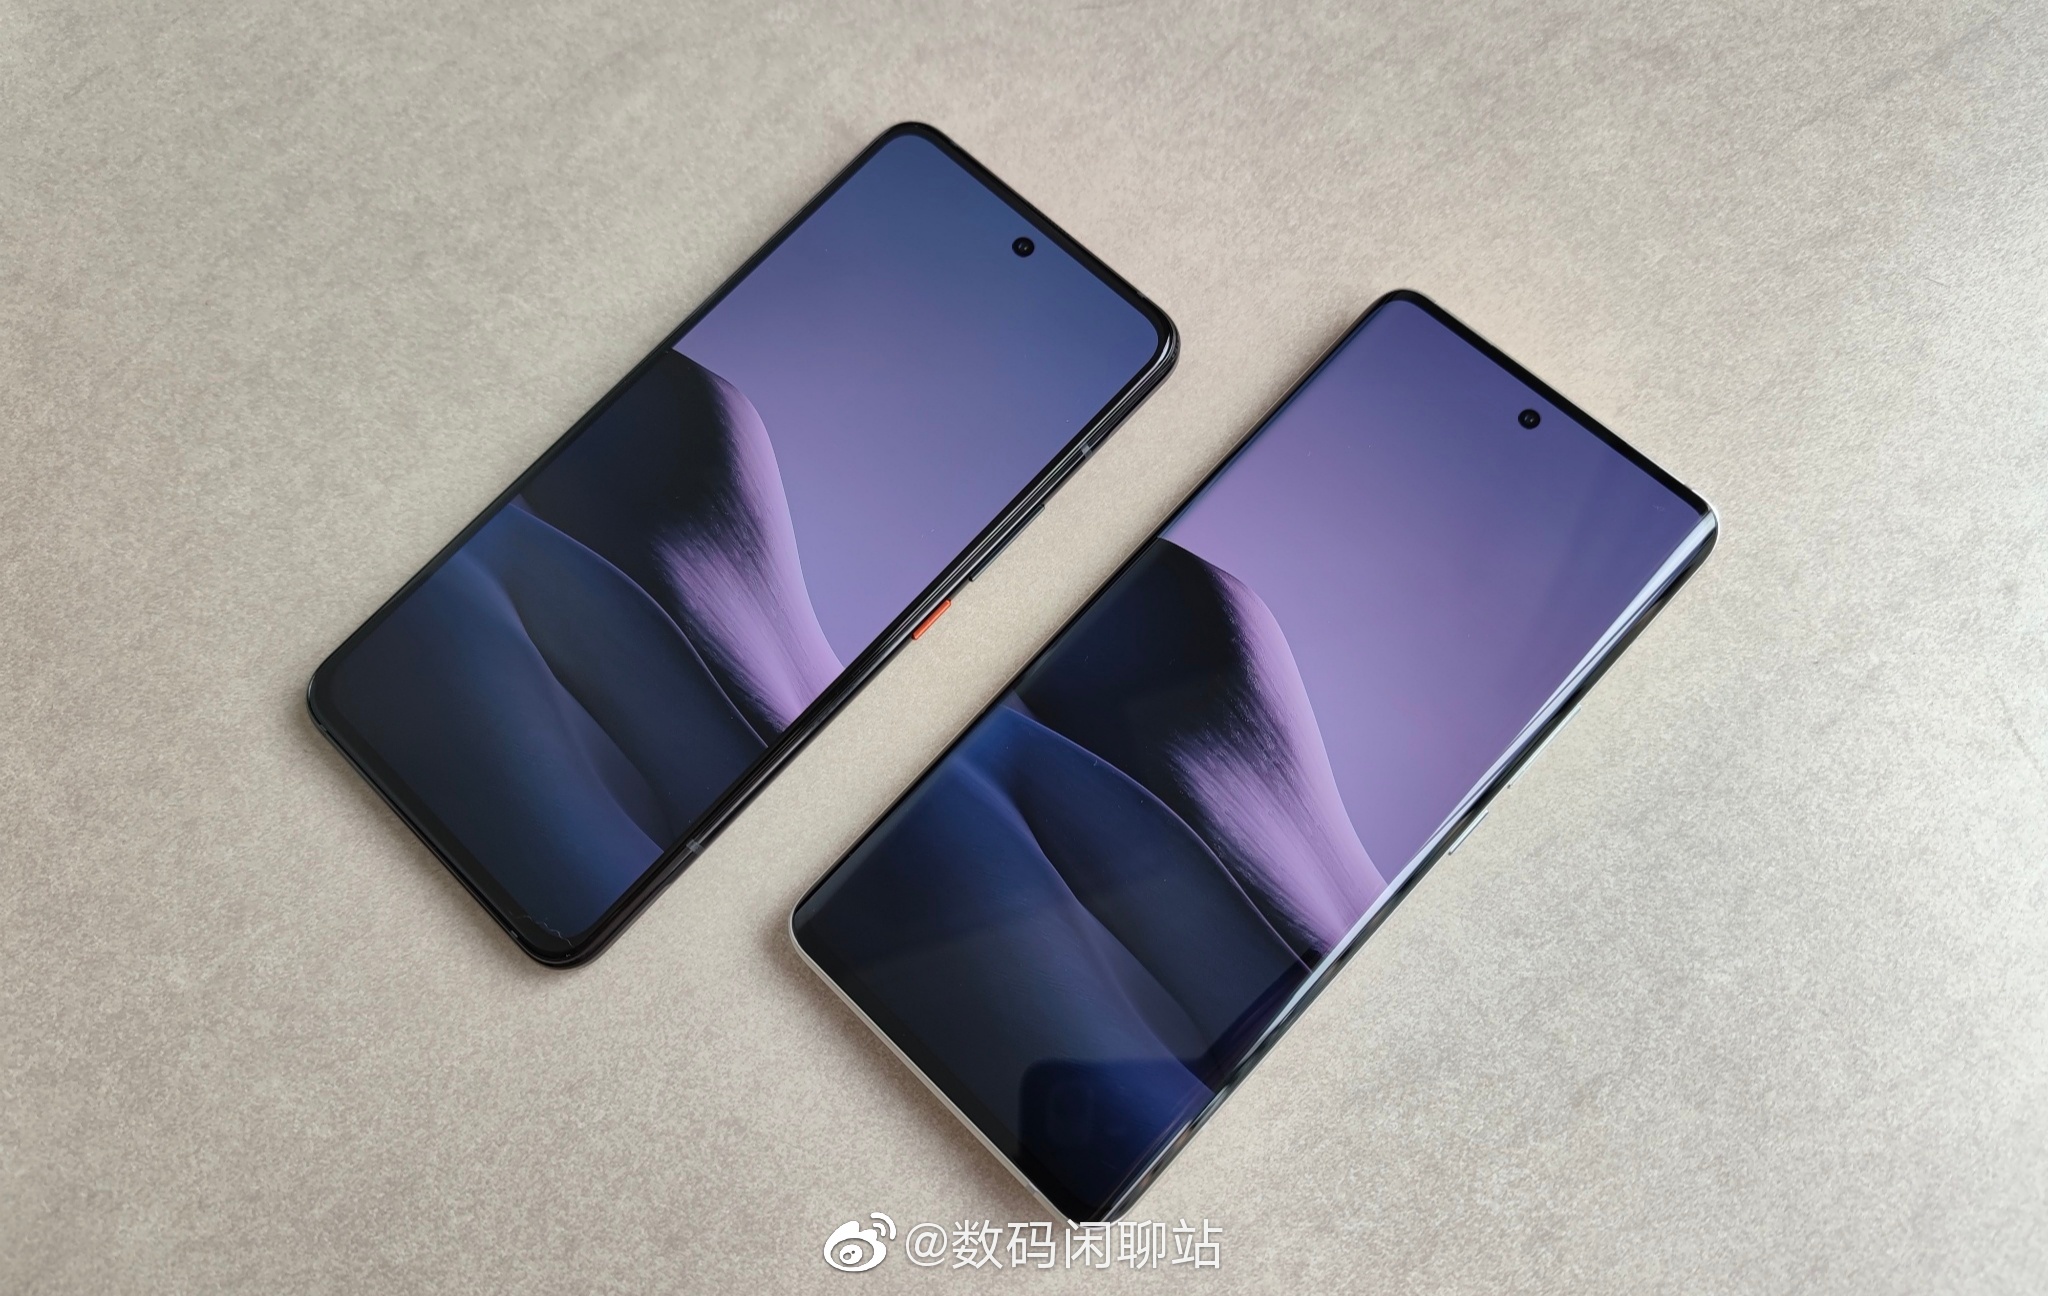 Xiaomi Mi 11 and Mi 11 Pro